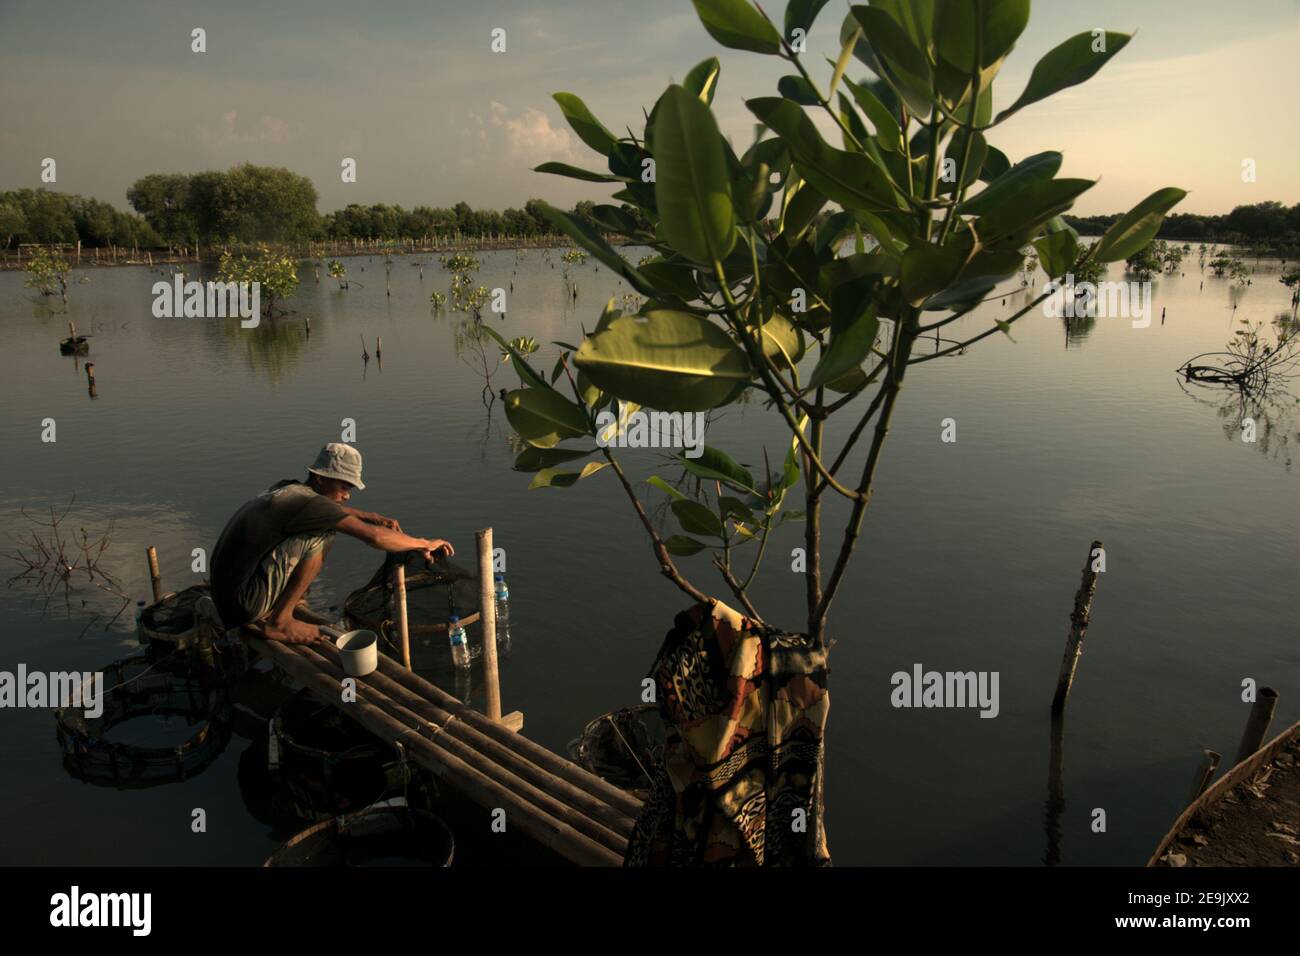 Un homme qui s'occupe de son installation aquacole a placé sur une zone de restauration de mangrove dans la zone côtière de Jakarta, en Indonésie. Banque D'Images